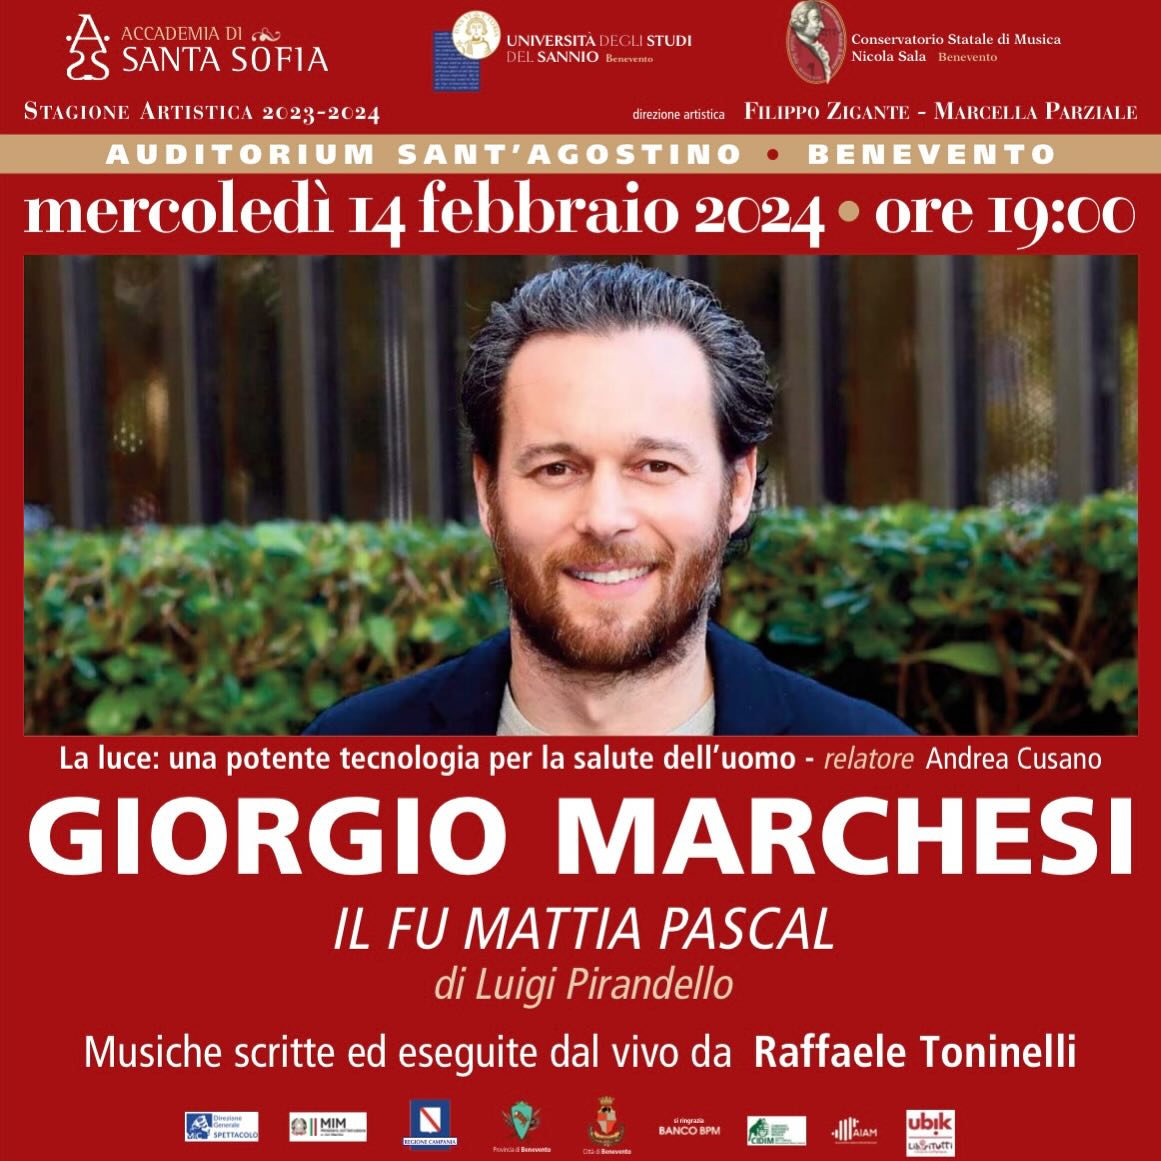 Accademia di Santa Sofia dopo i successi musicali, rilancia con il teatro di Giorgio Marchesi!